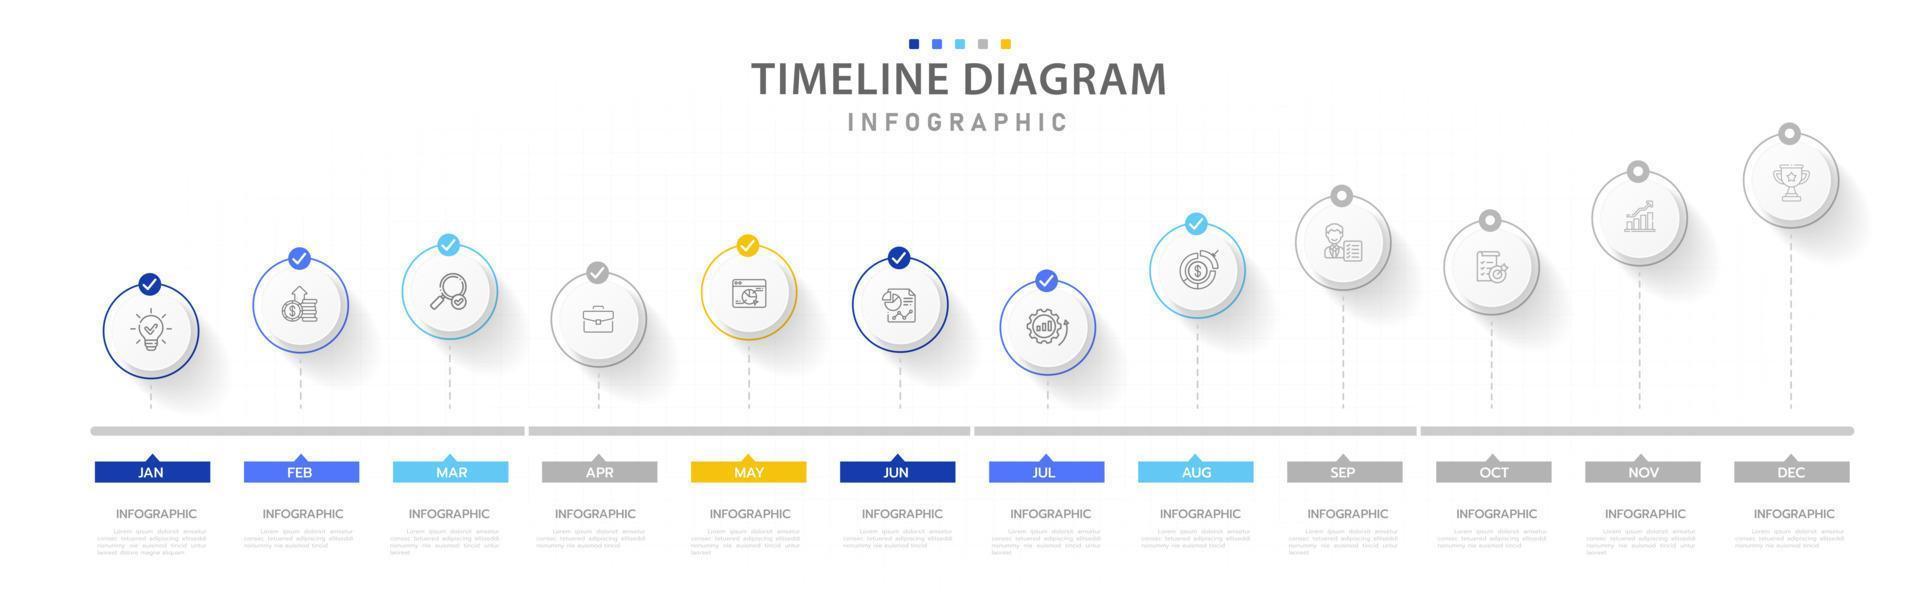 plantilla infográfica para negocios. Calendario de diagrama de línea de tiempo moderno de 12 meses, infografía vectorial de presentación. vector